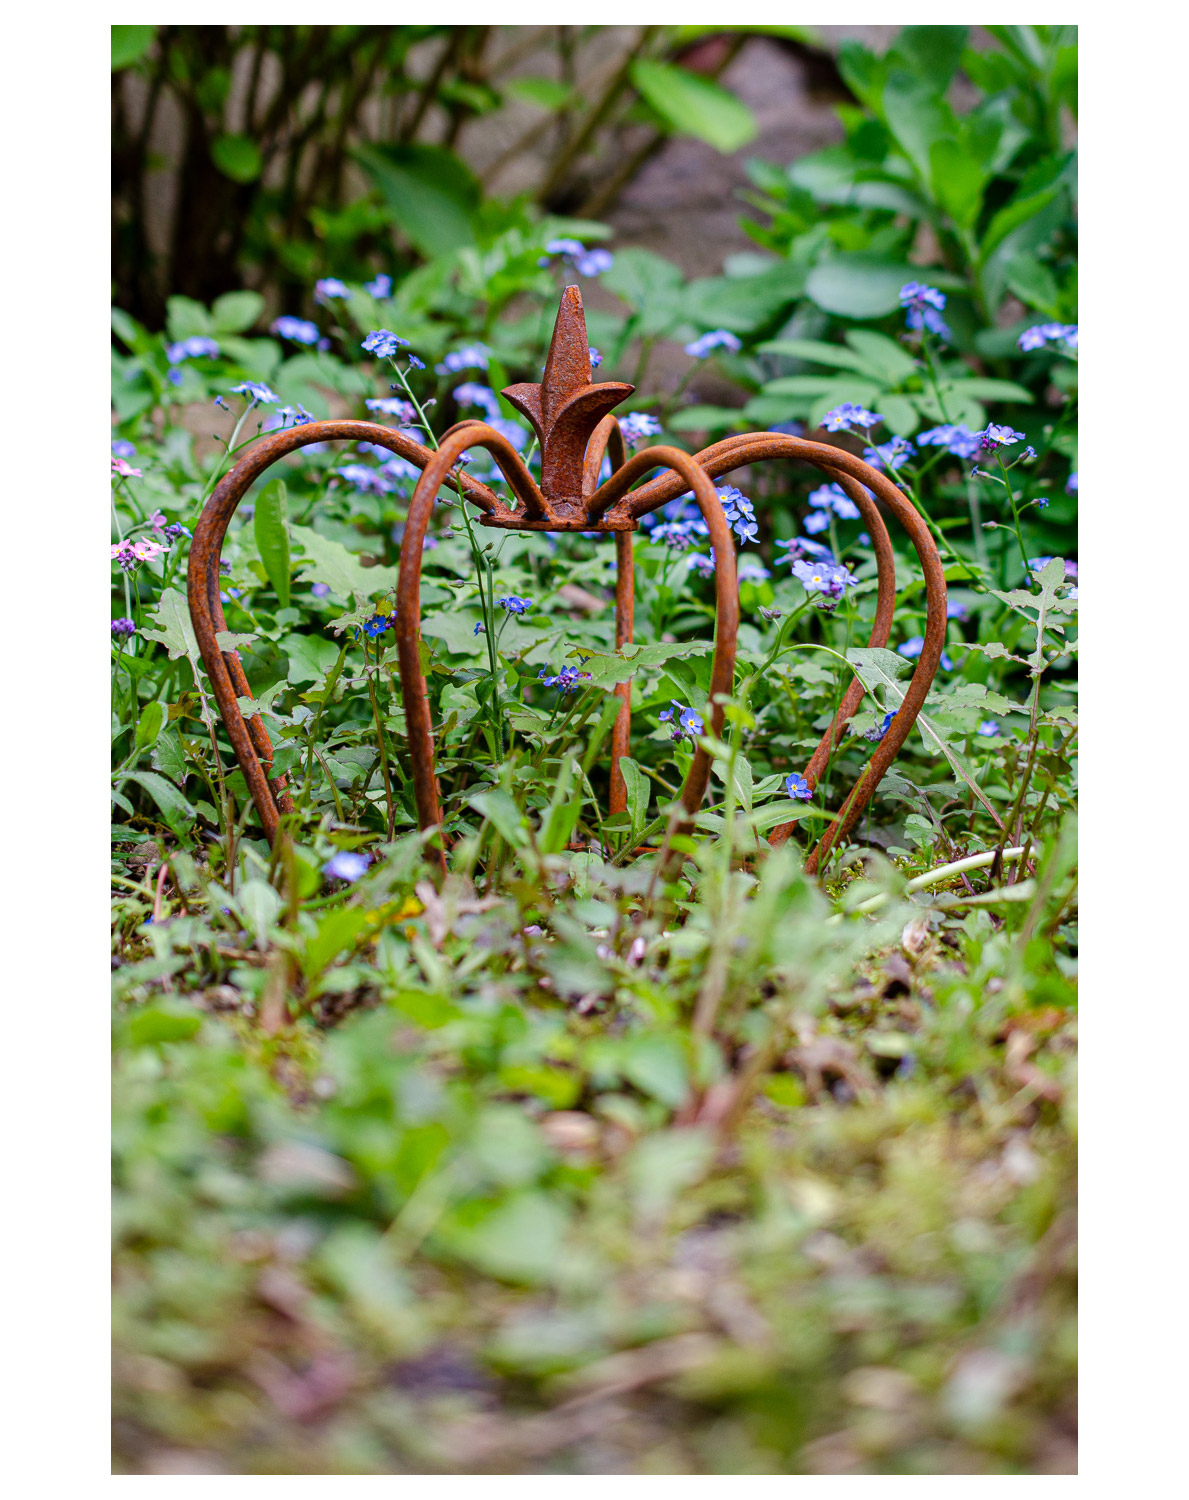 Deko Garten Rost Frisch Crown Iron Lily Garden Decoration Rust Antique Style 24cm